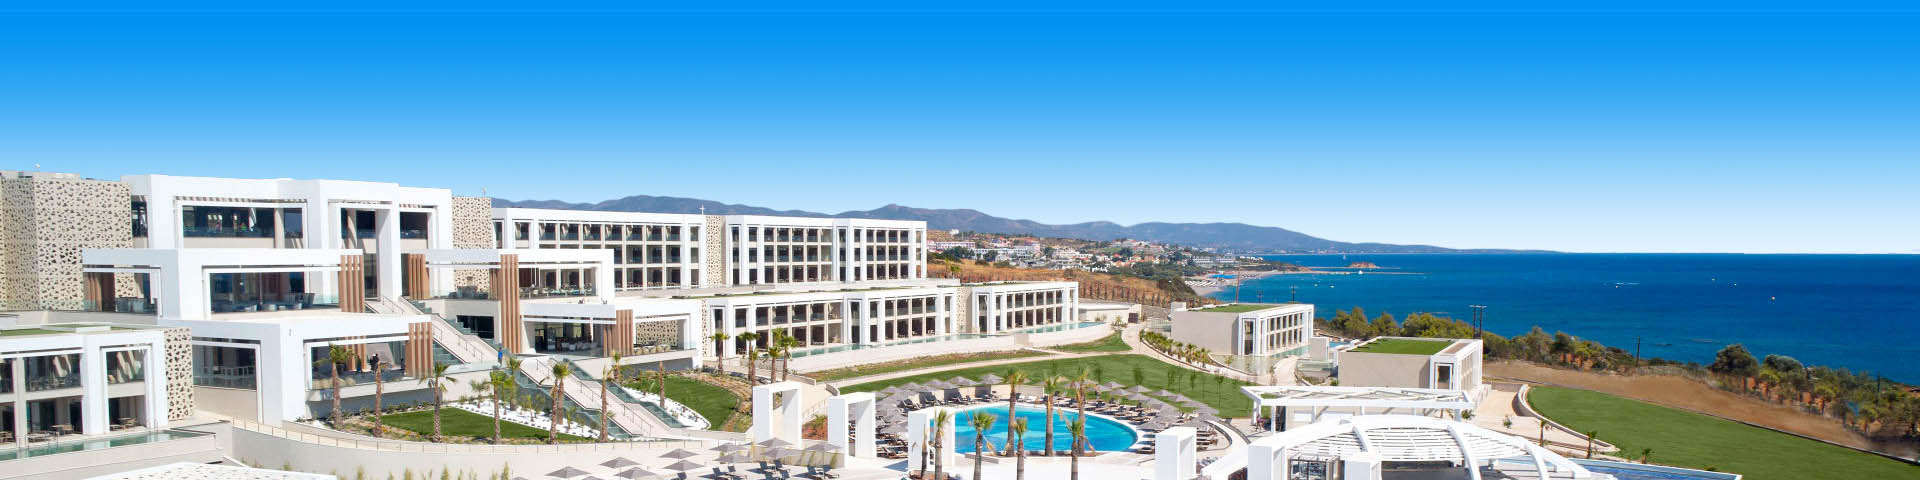 Luxe all inclusive resort met prachtig zwembad op het Griekse eiland Rhodos